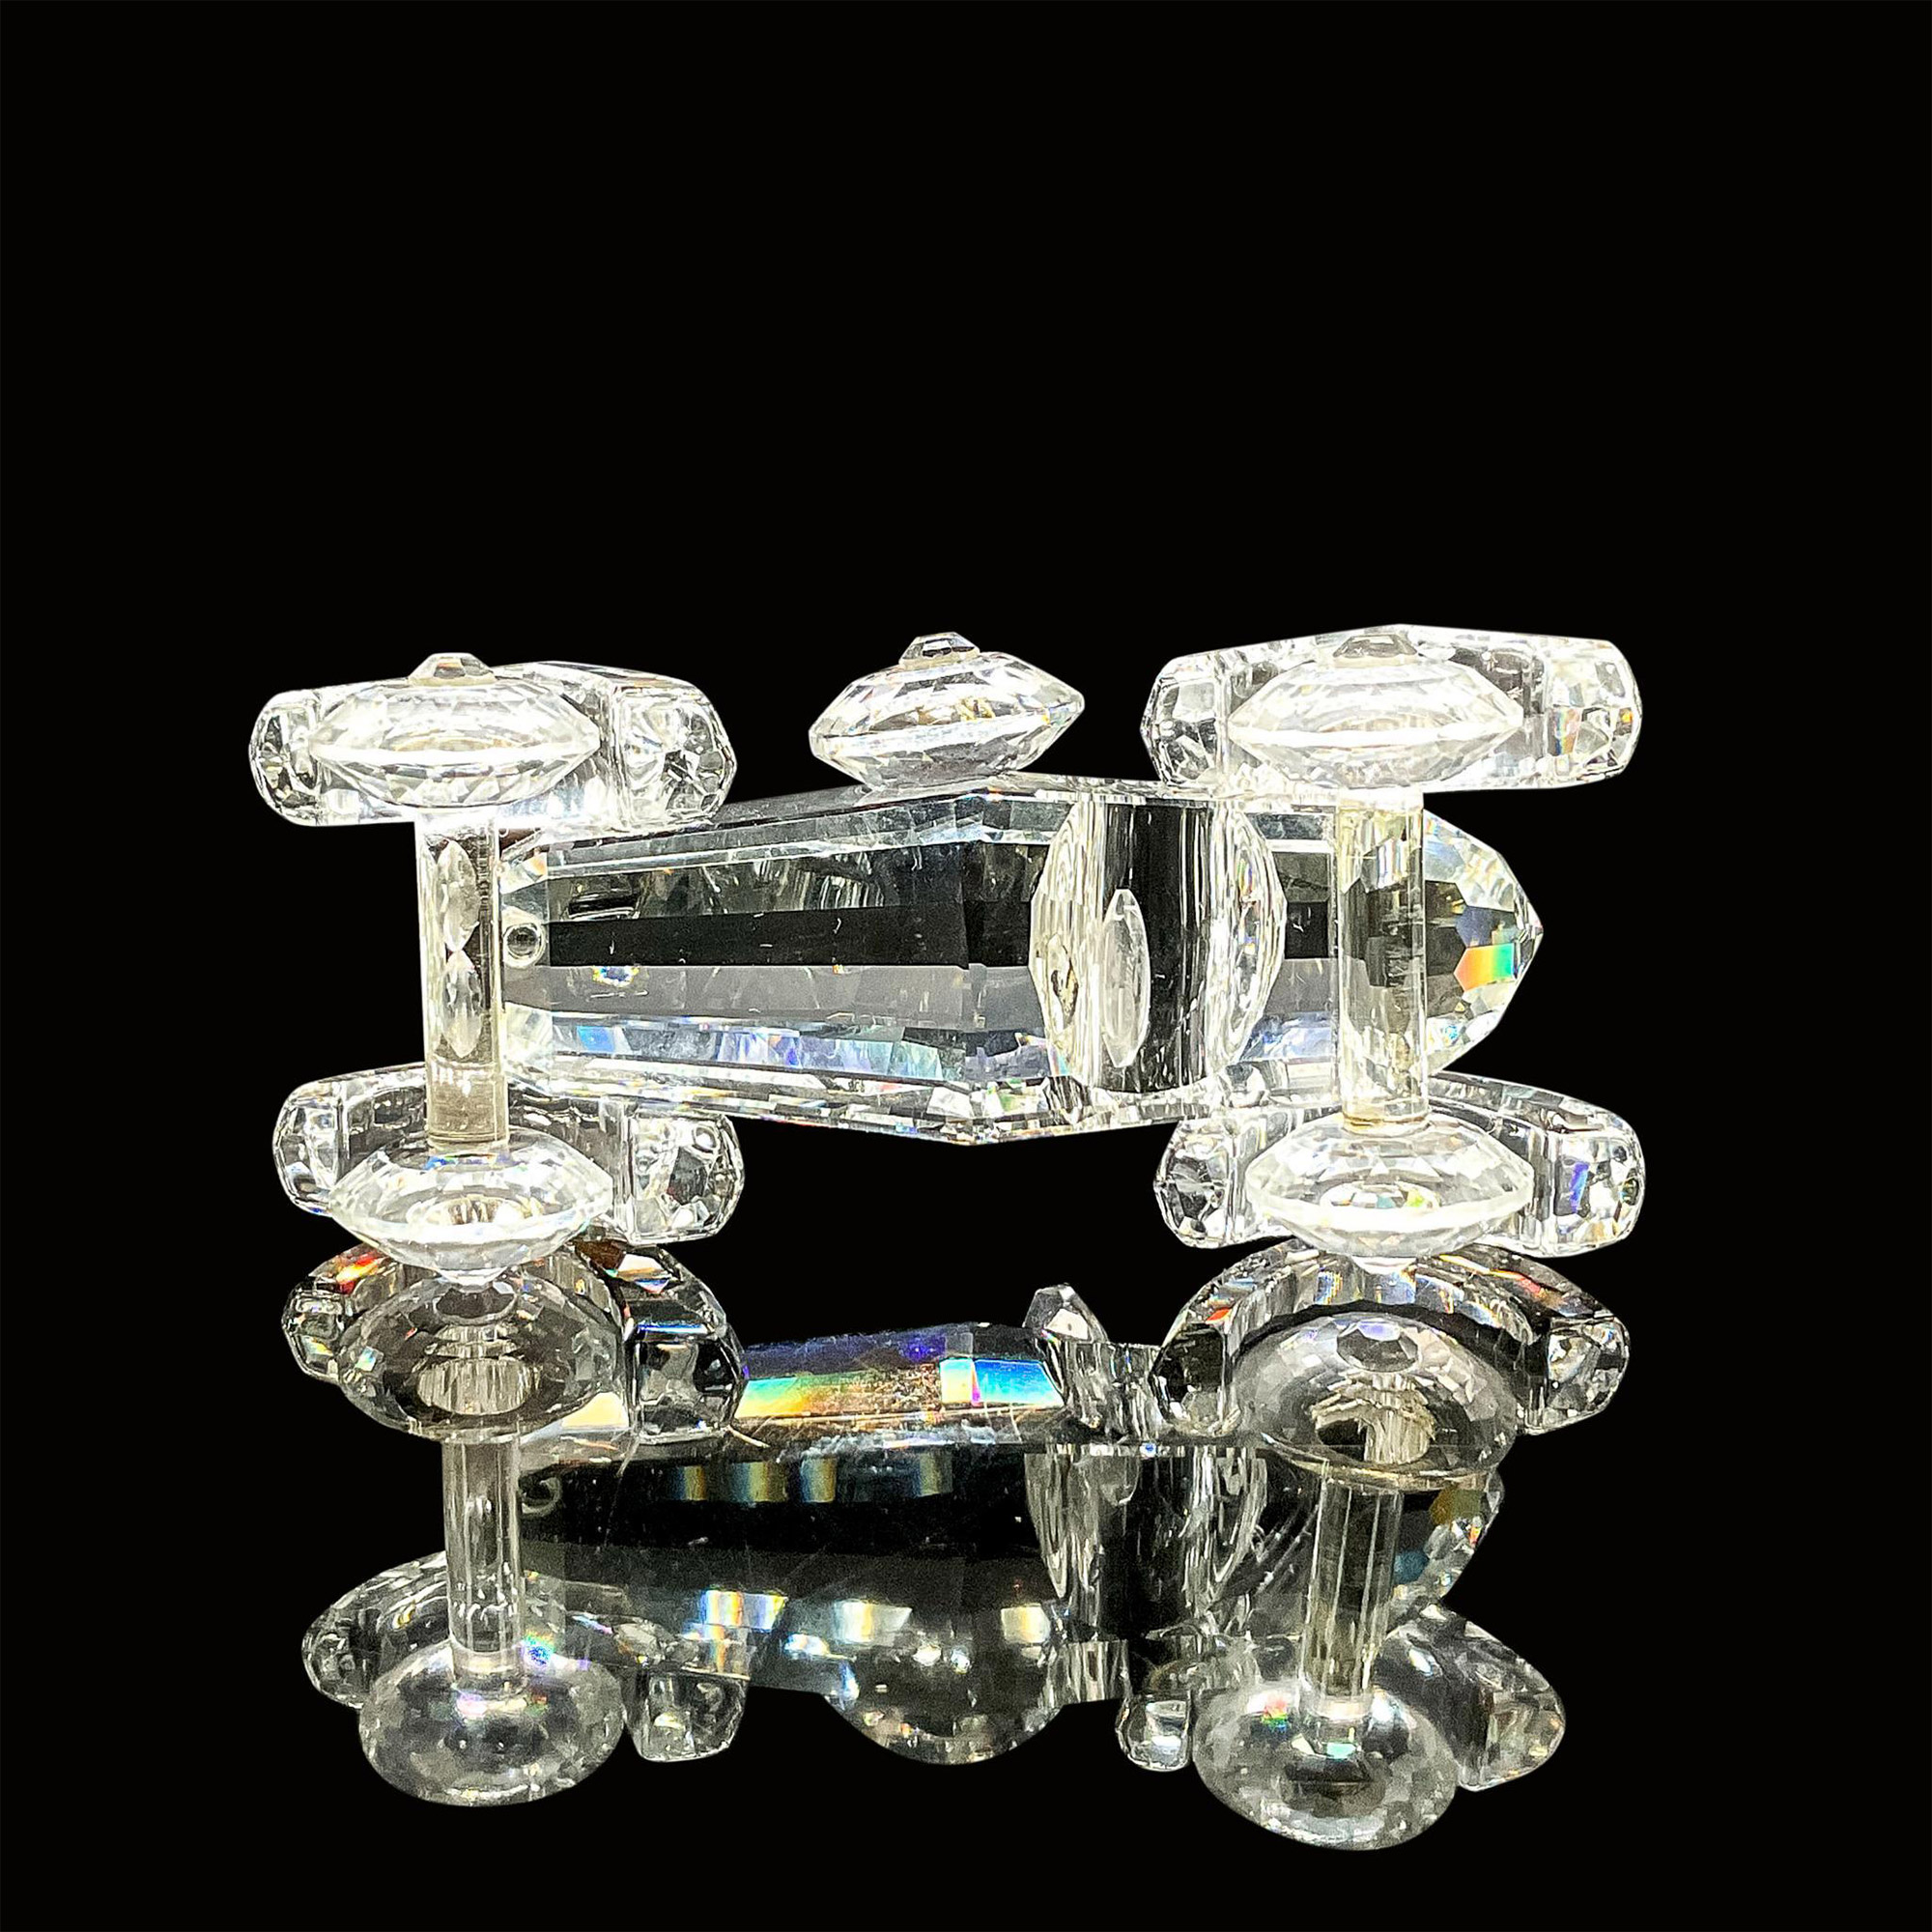 Swarovski Silver Crystal Figurine, Old Timer - Image 4 of 4